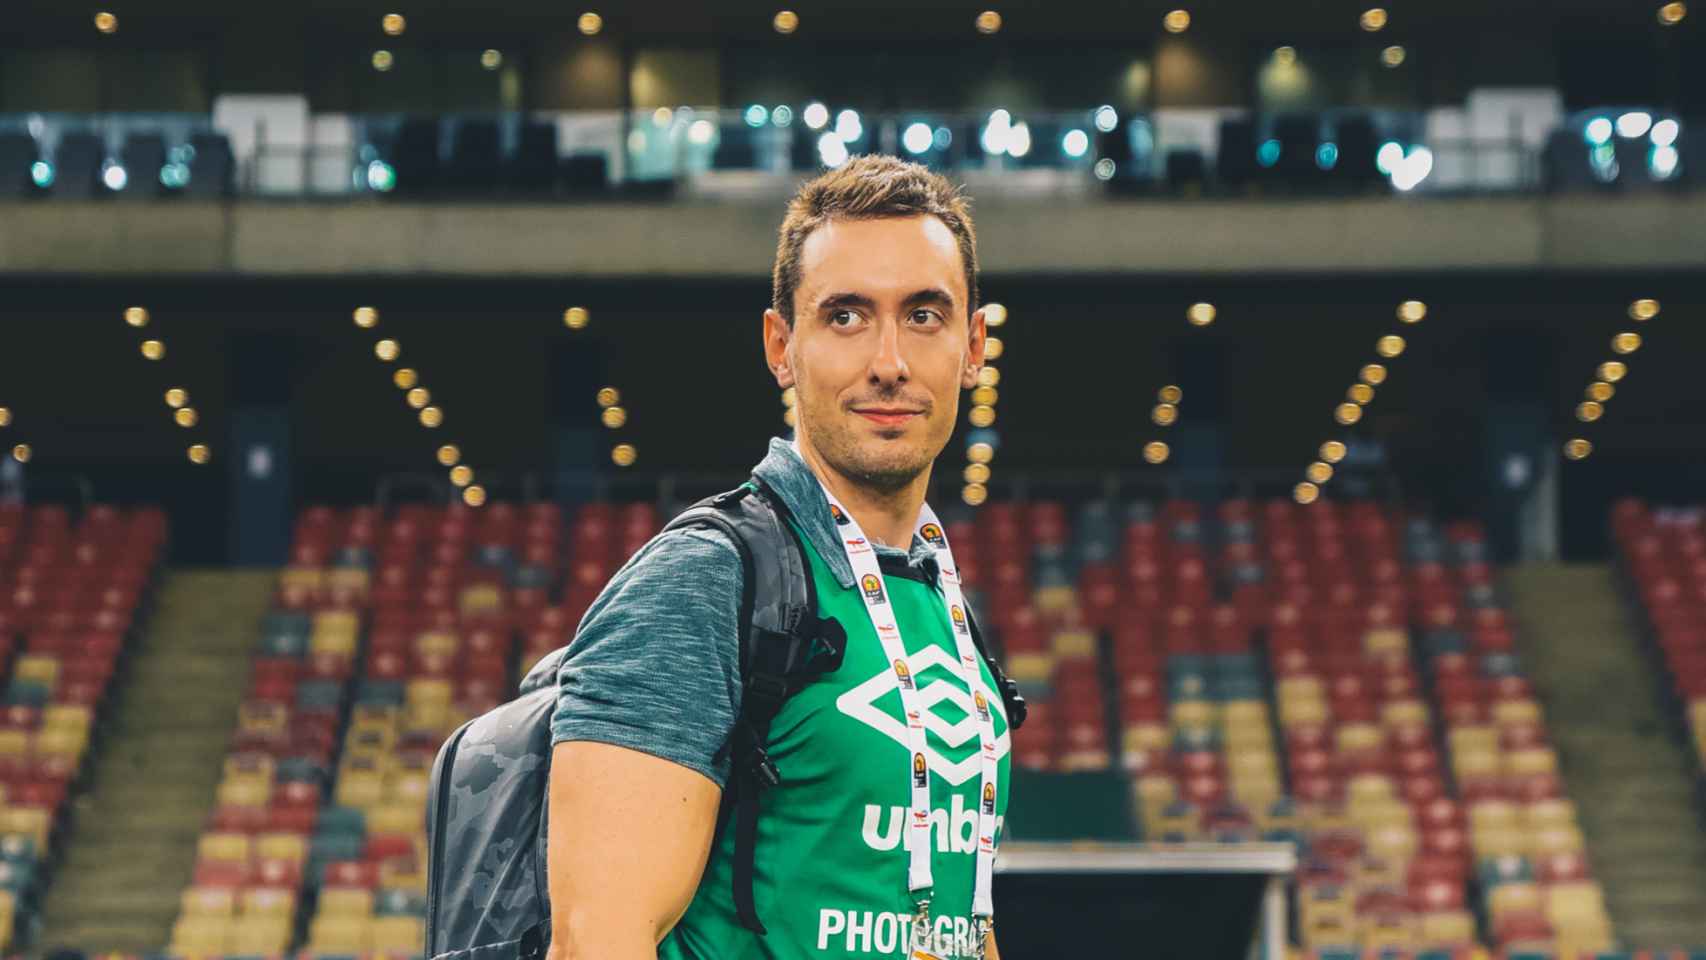 El fotógrafo vallisoletano Andrés Domingo en la Copa África